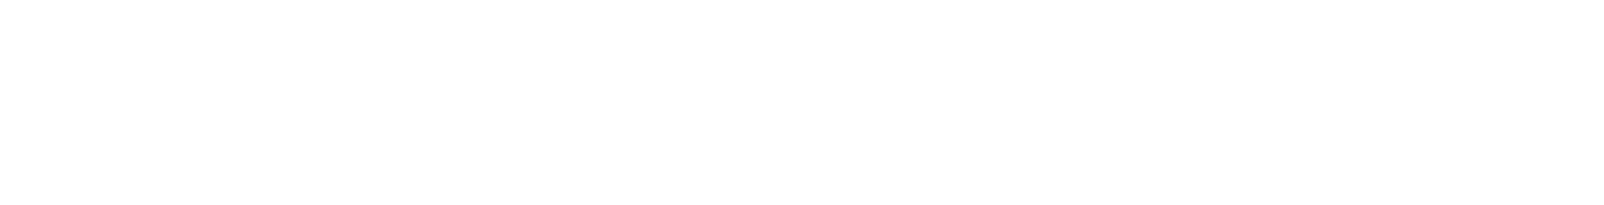 LPL Financial
 Logo groß für dunkle Hintergründe (transparentes PNG)